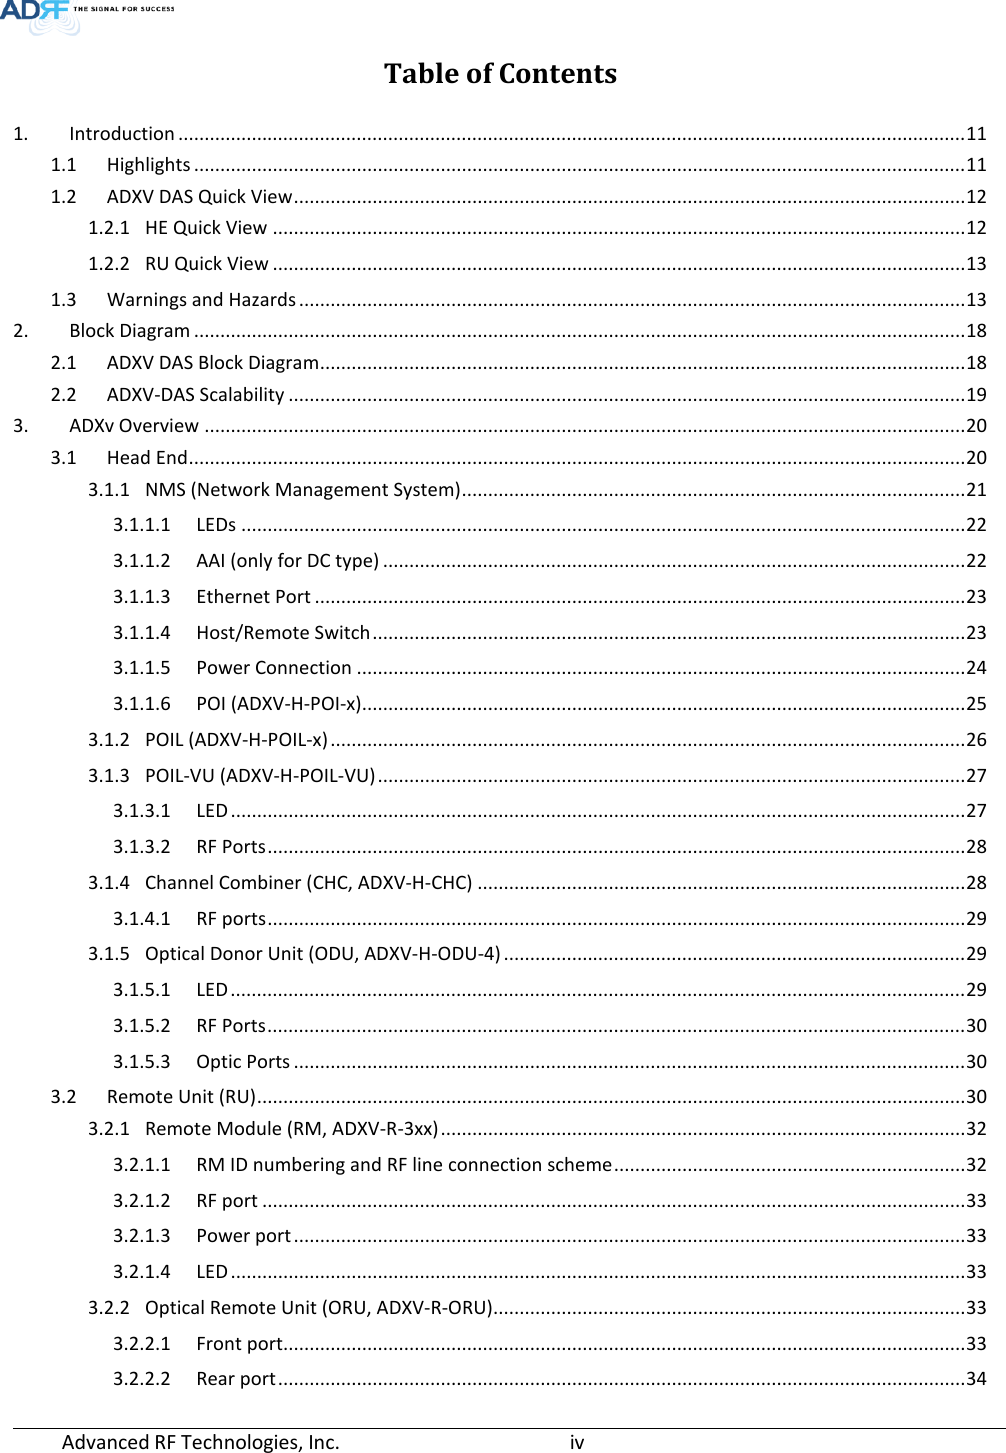 Page 4 of ADRF KOREA ADXV-R-25VUNA DAS (Distributed Antenna System) User Manual ADXV DAS